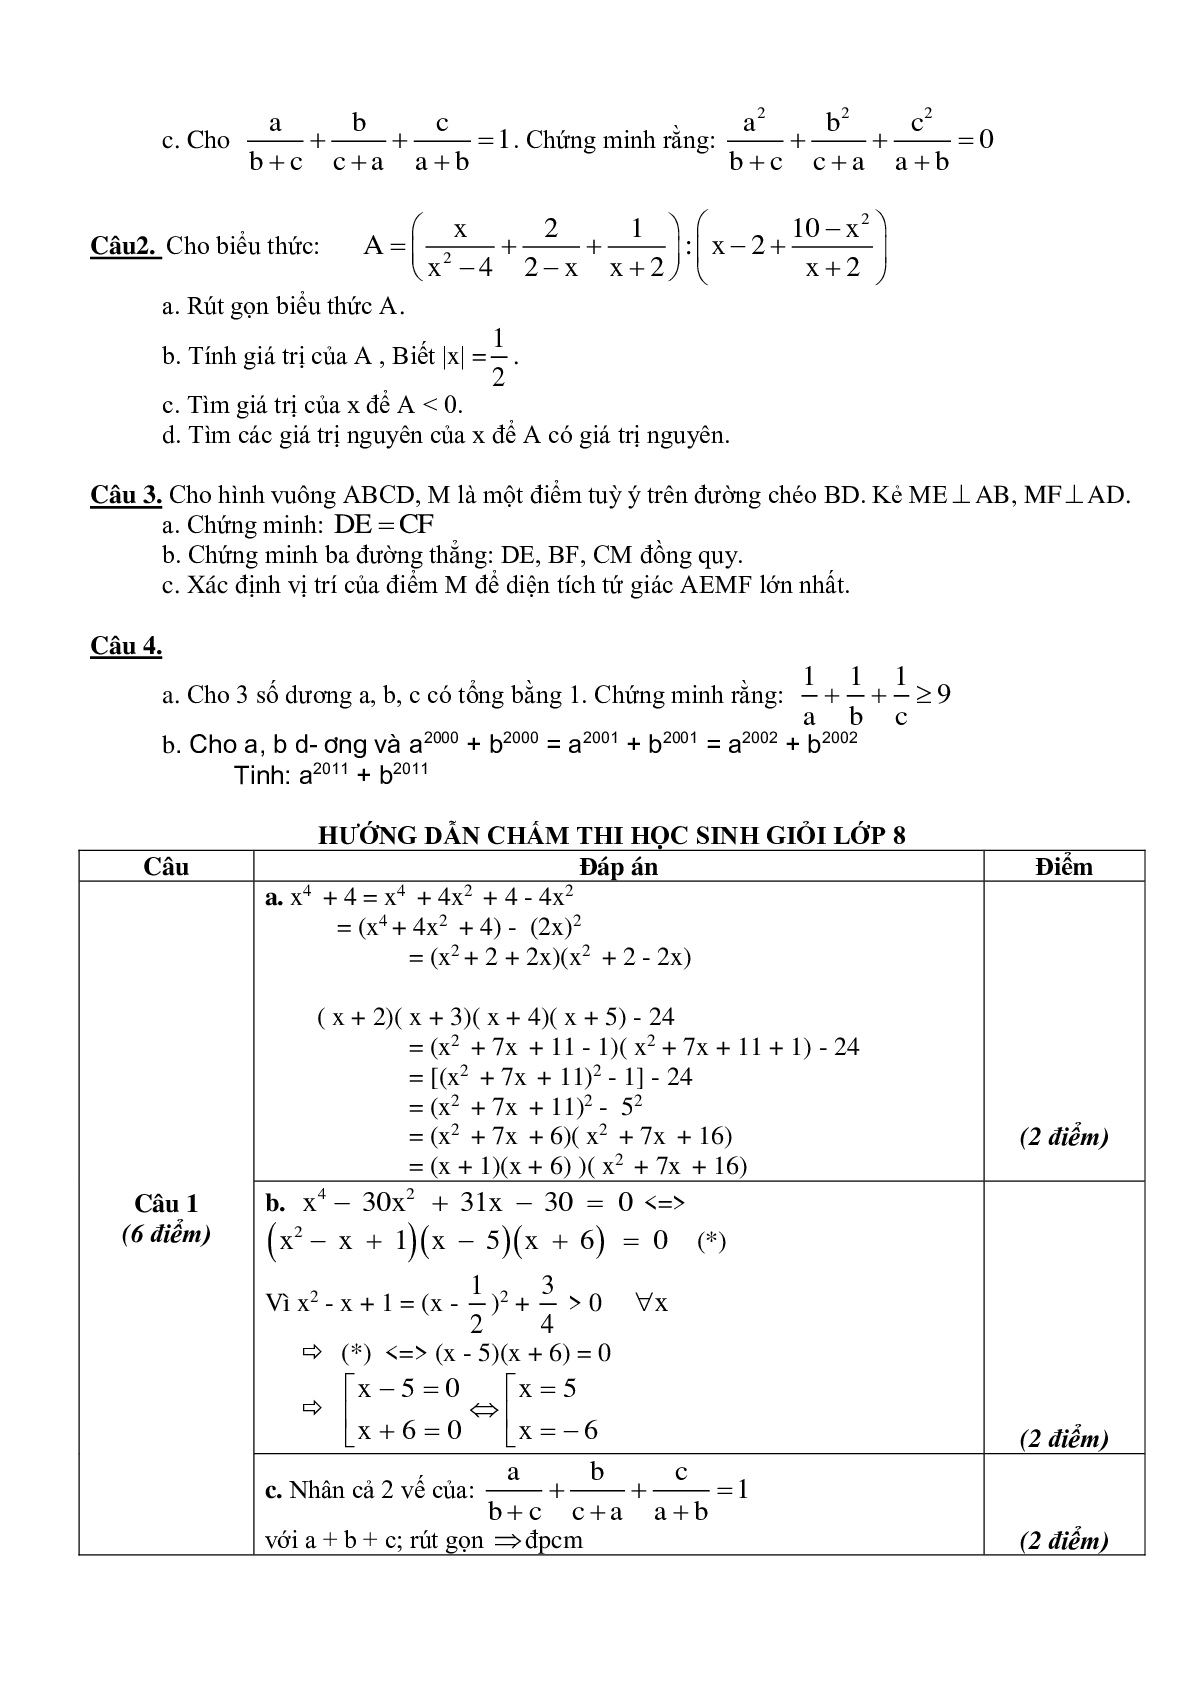 Tuyển tập đề thi học sinh giỏi toán lớp 8 (trang 4)